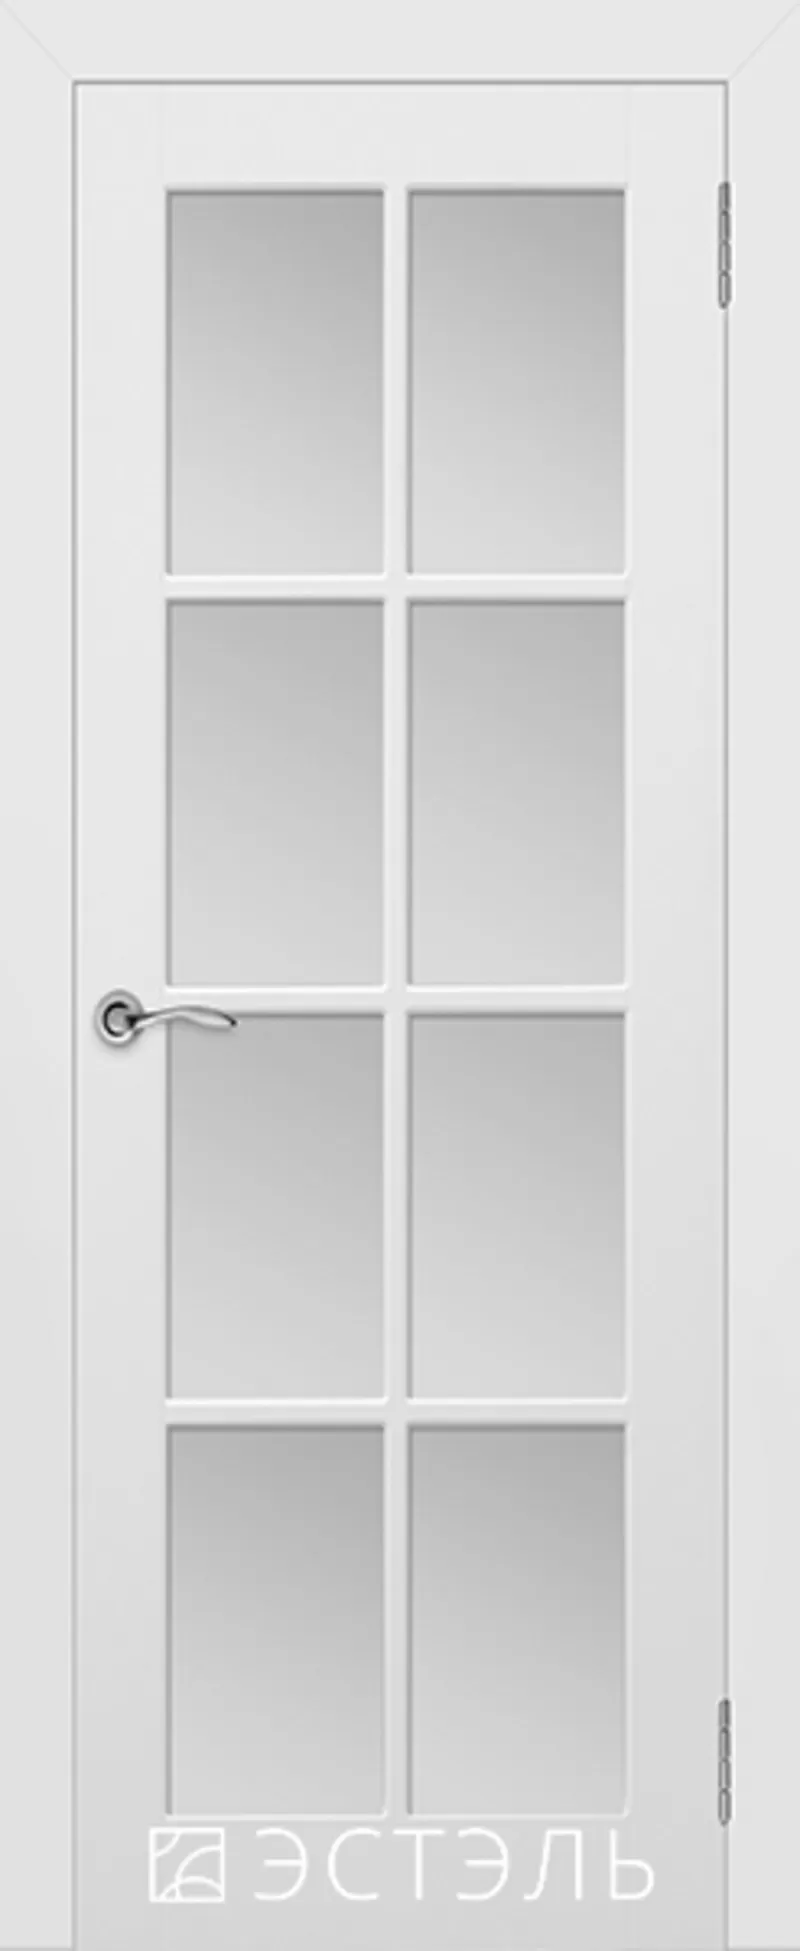 Межкомнатные двери эмаль белые от 250 руб. за комплект. 3